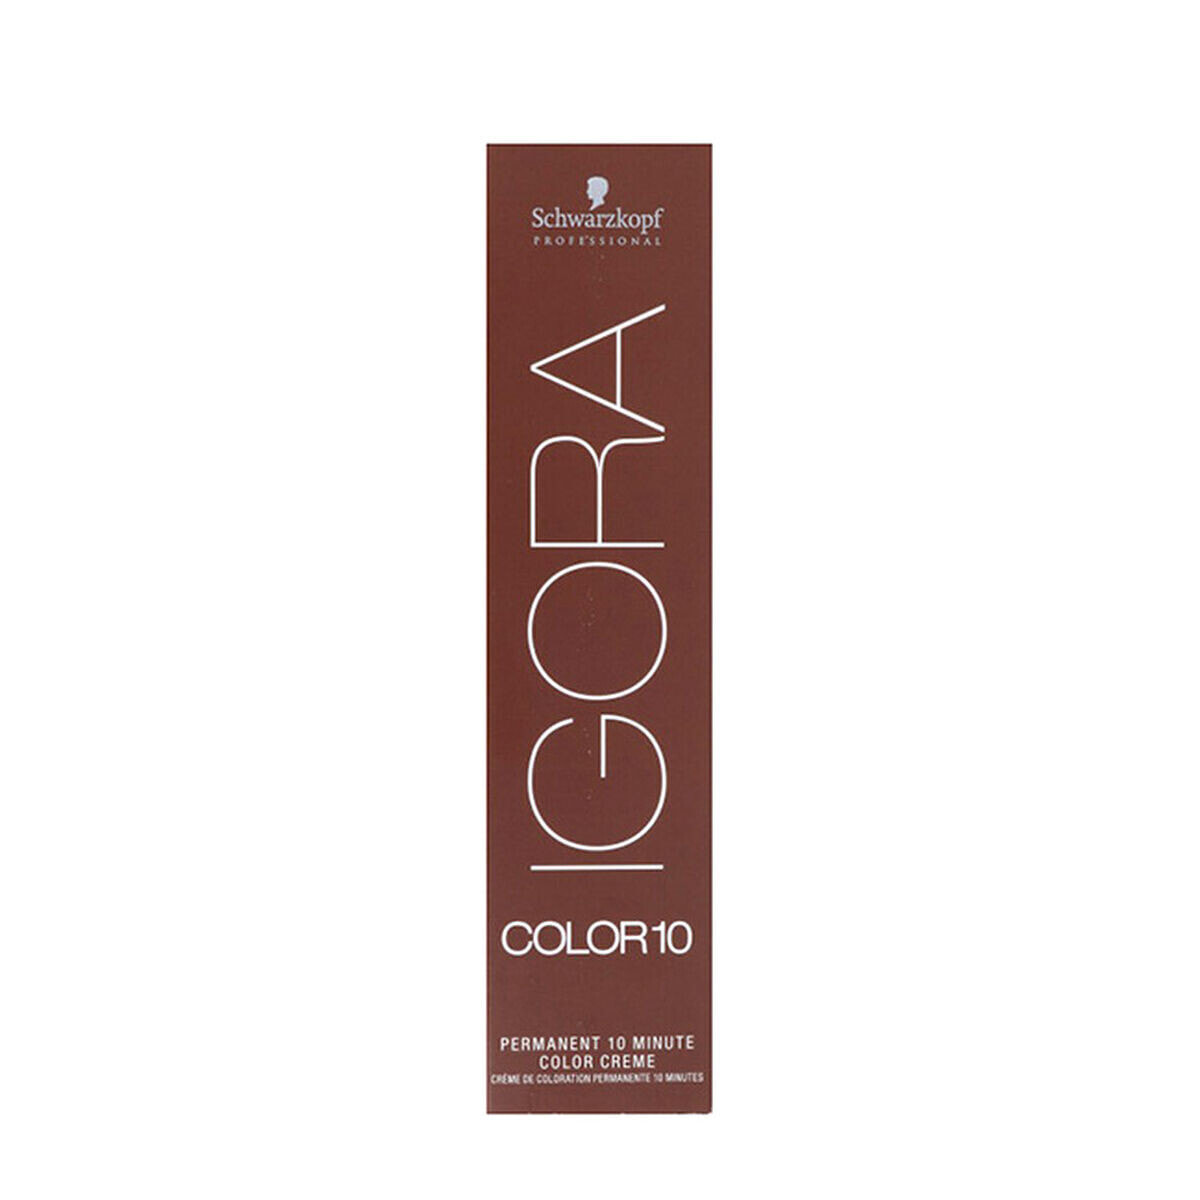 Постоянная краска Igora Color10 Schwarzkopf 9-5 (60 ml)